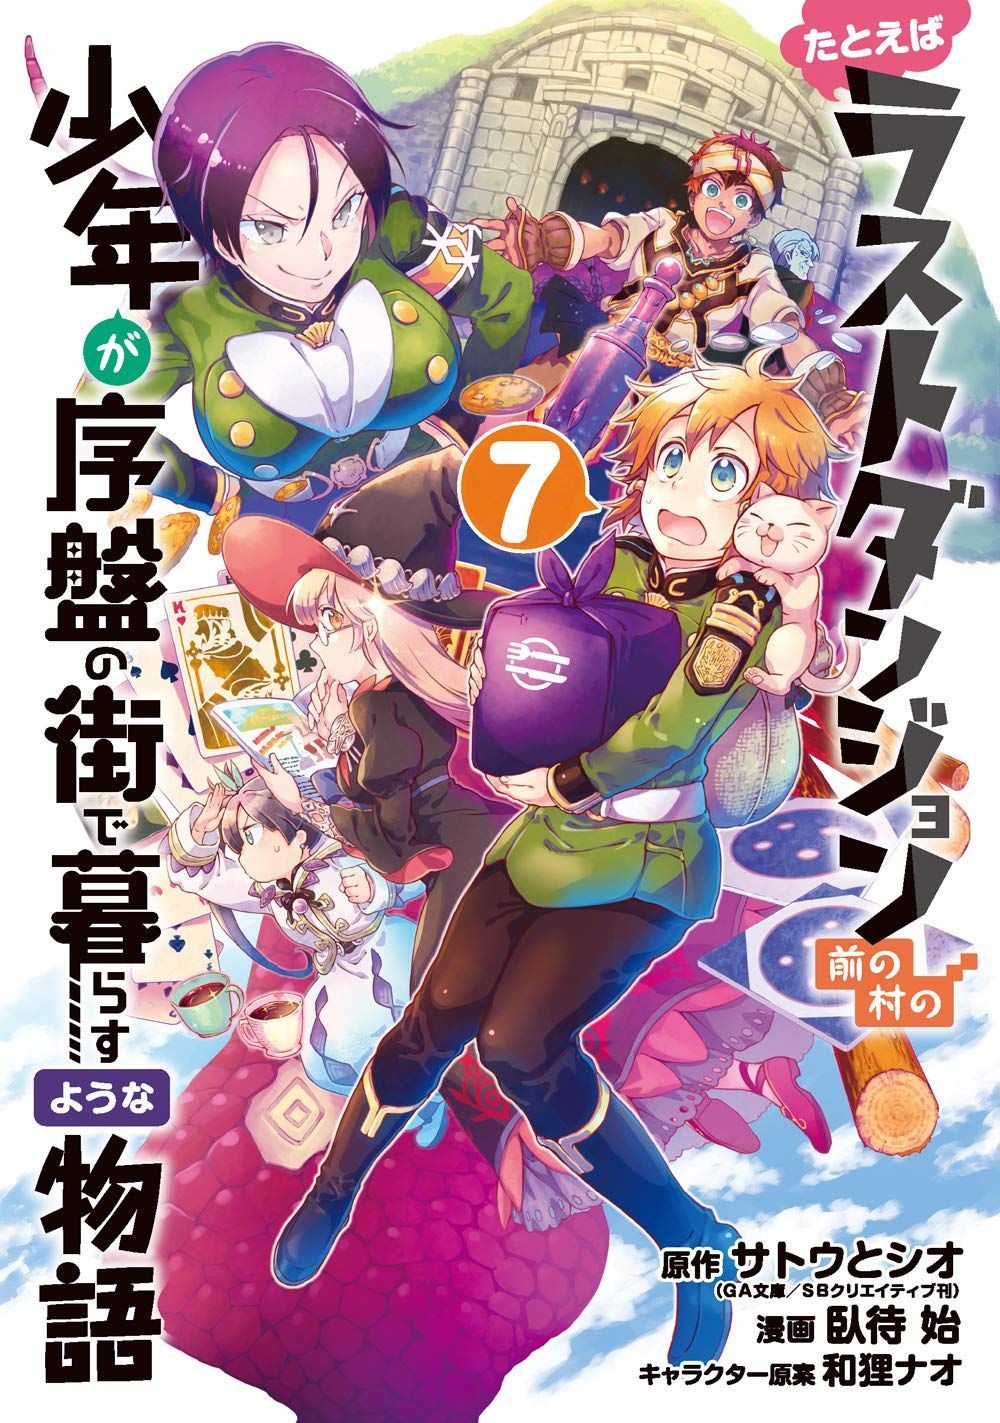 Manga VO Tatoeba Last Dungeon Mae no Mura no Shounen ga Joban no Machi de Kurasu Youna Monogatari jp Vol.7 ( FUSEMACHI Hajime SATÔ Toshio ) たとえばラストダンジョン前の村の少年が 序盤の街で暮らすような物語